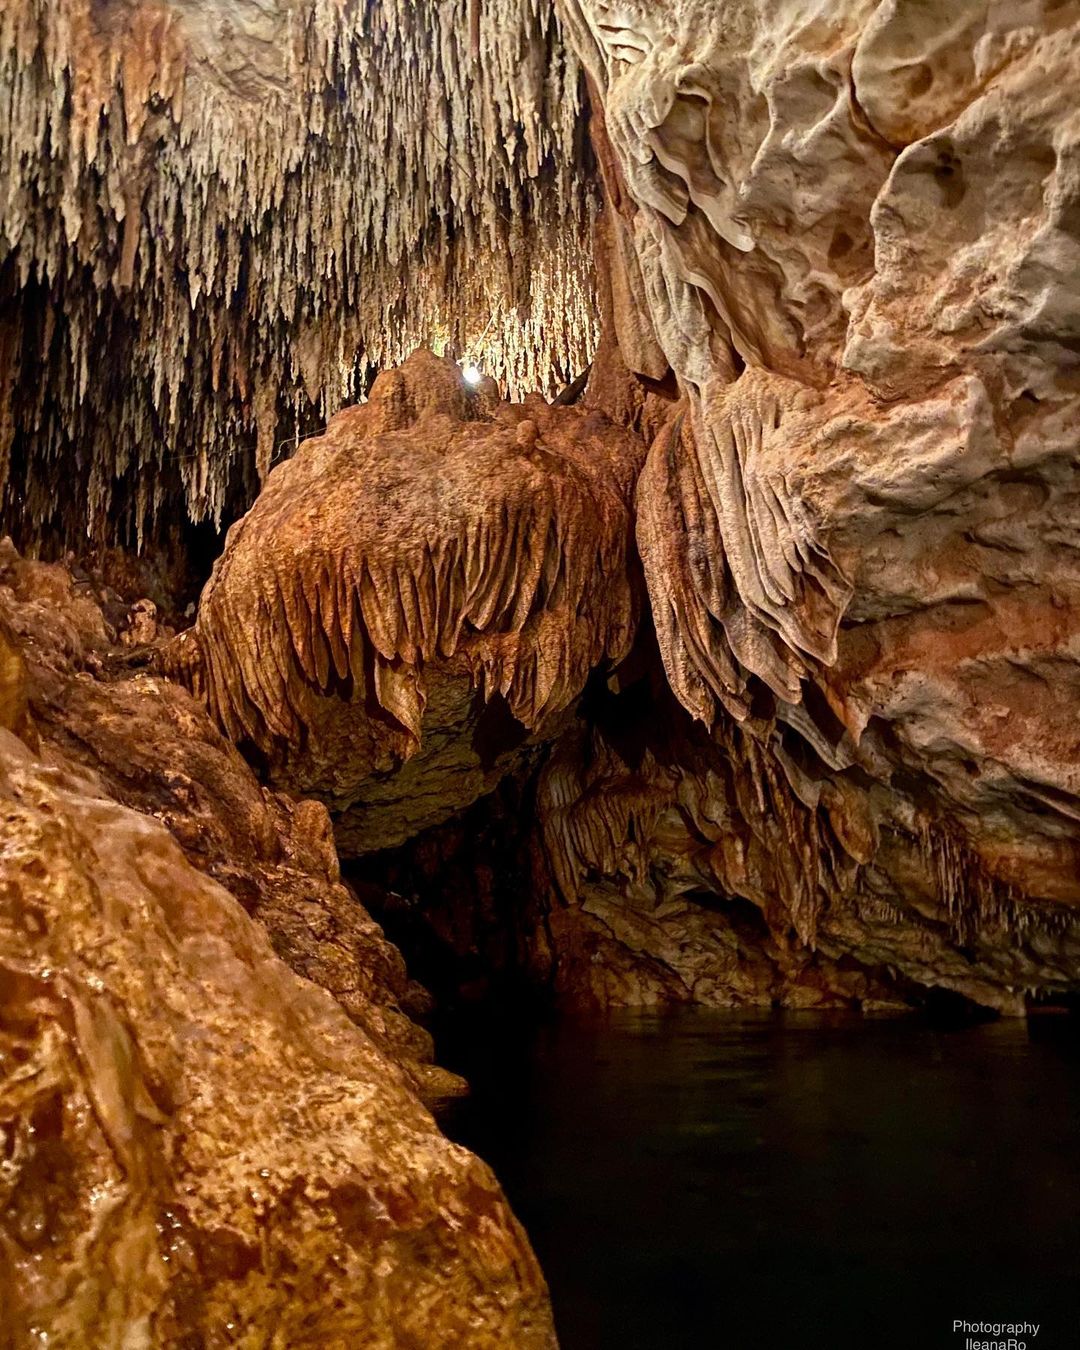 grutas de loltun